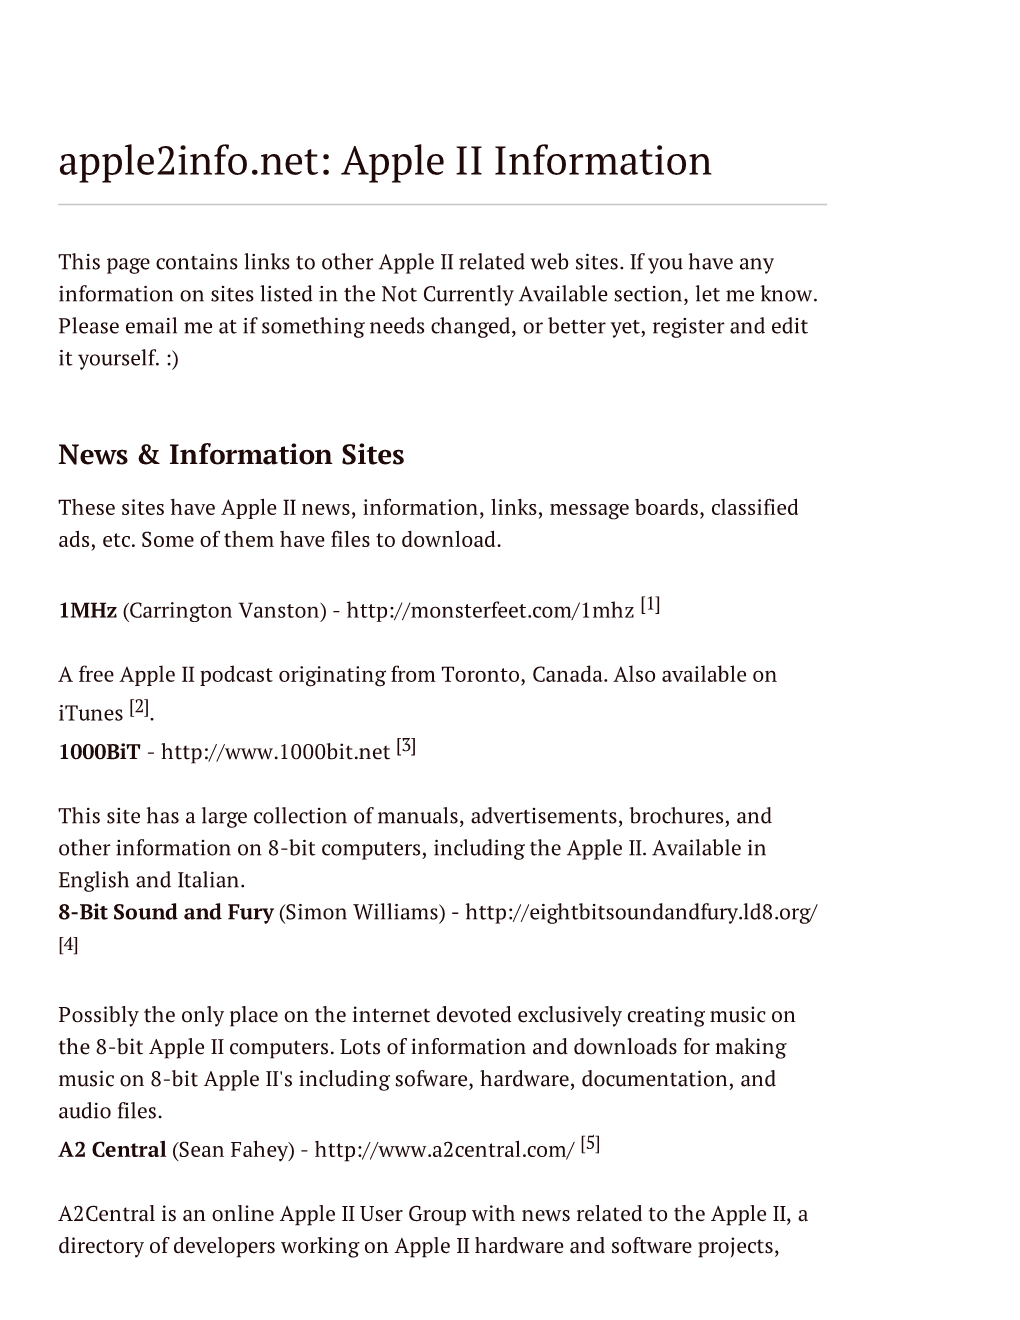 Apple2info.Net: Apple II Information